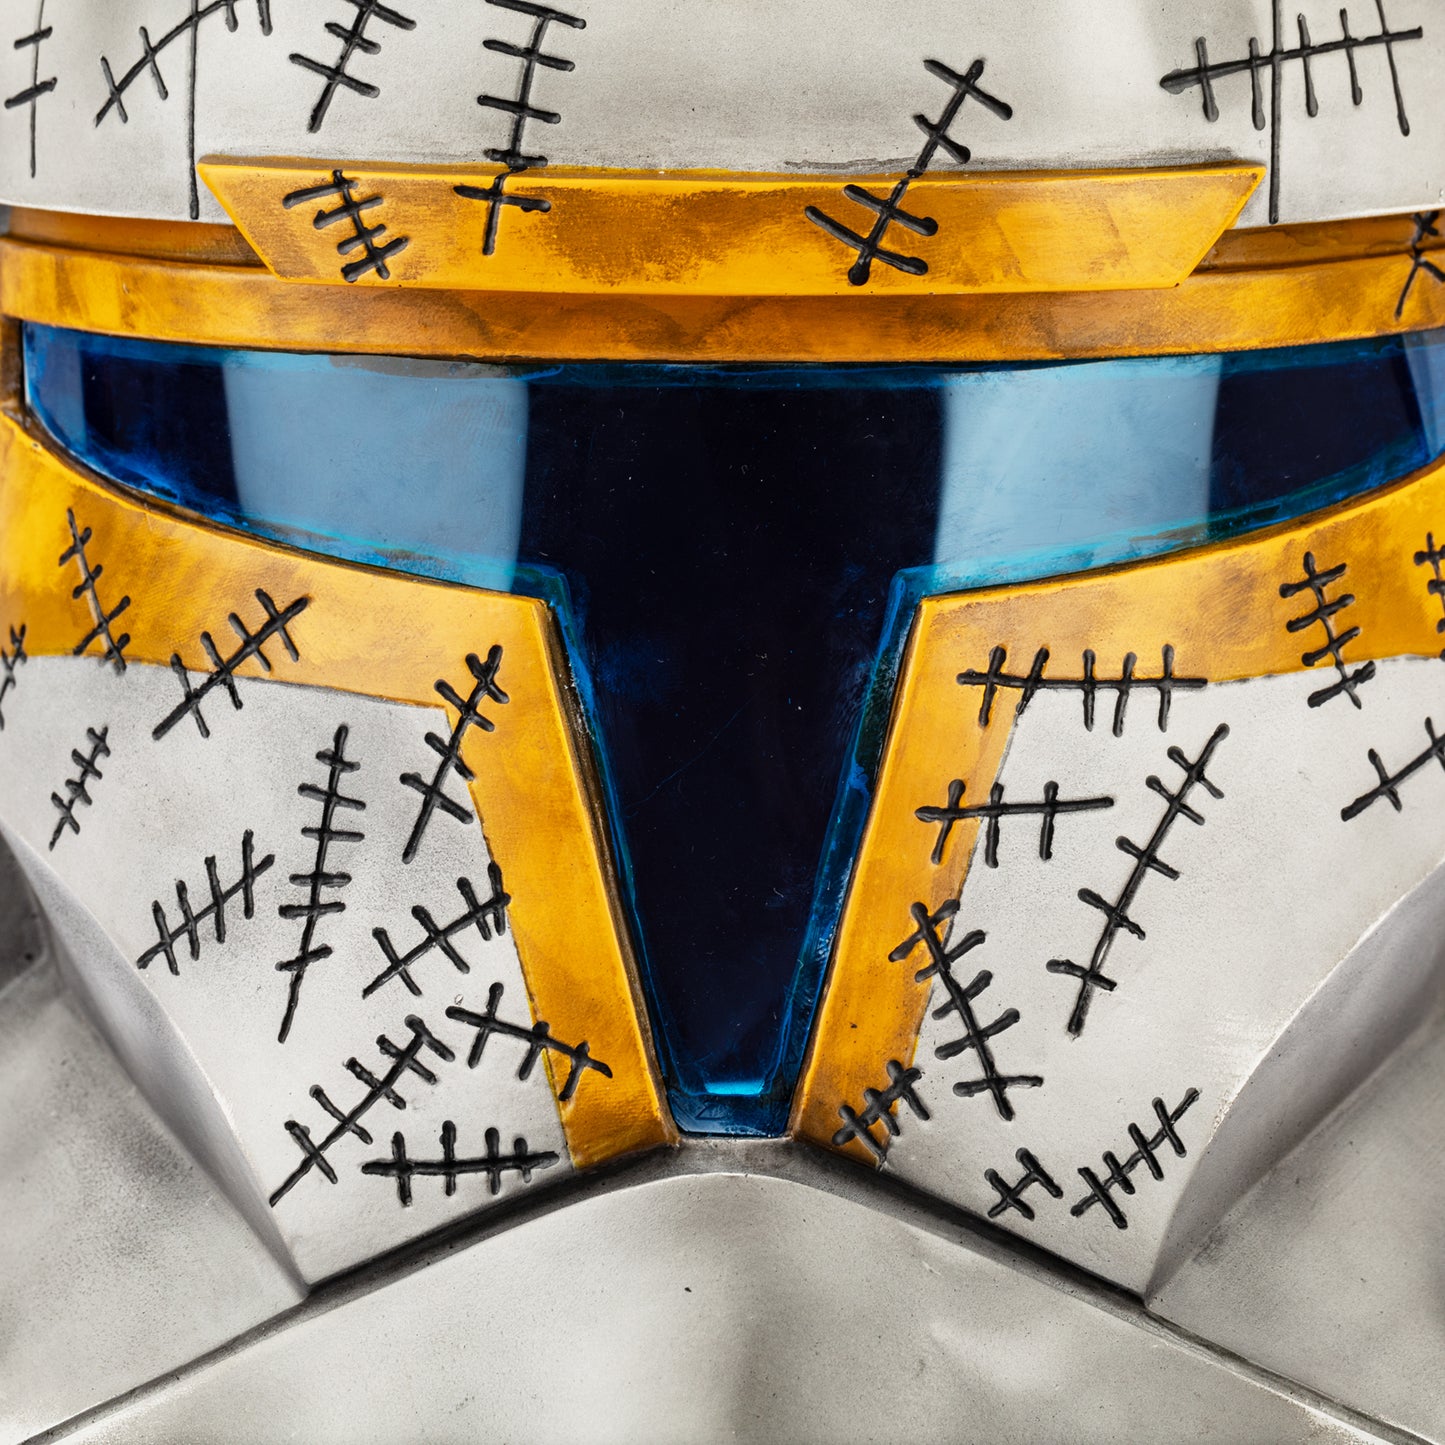 【Neu eingetroffen】Xcoser Star Wars Clone Commander Gregor Helm Halloween Cosplay Helm für Erwachsene